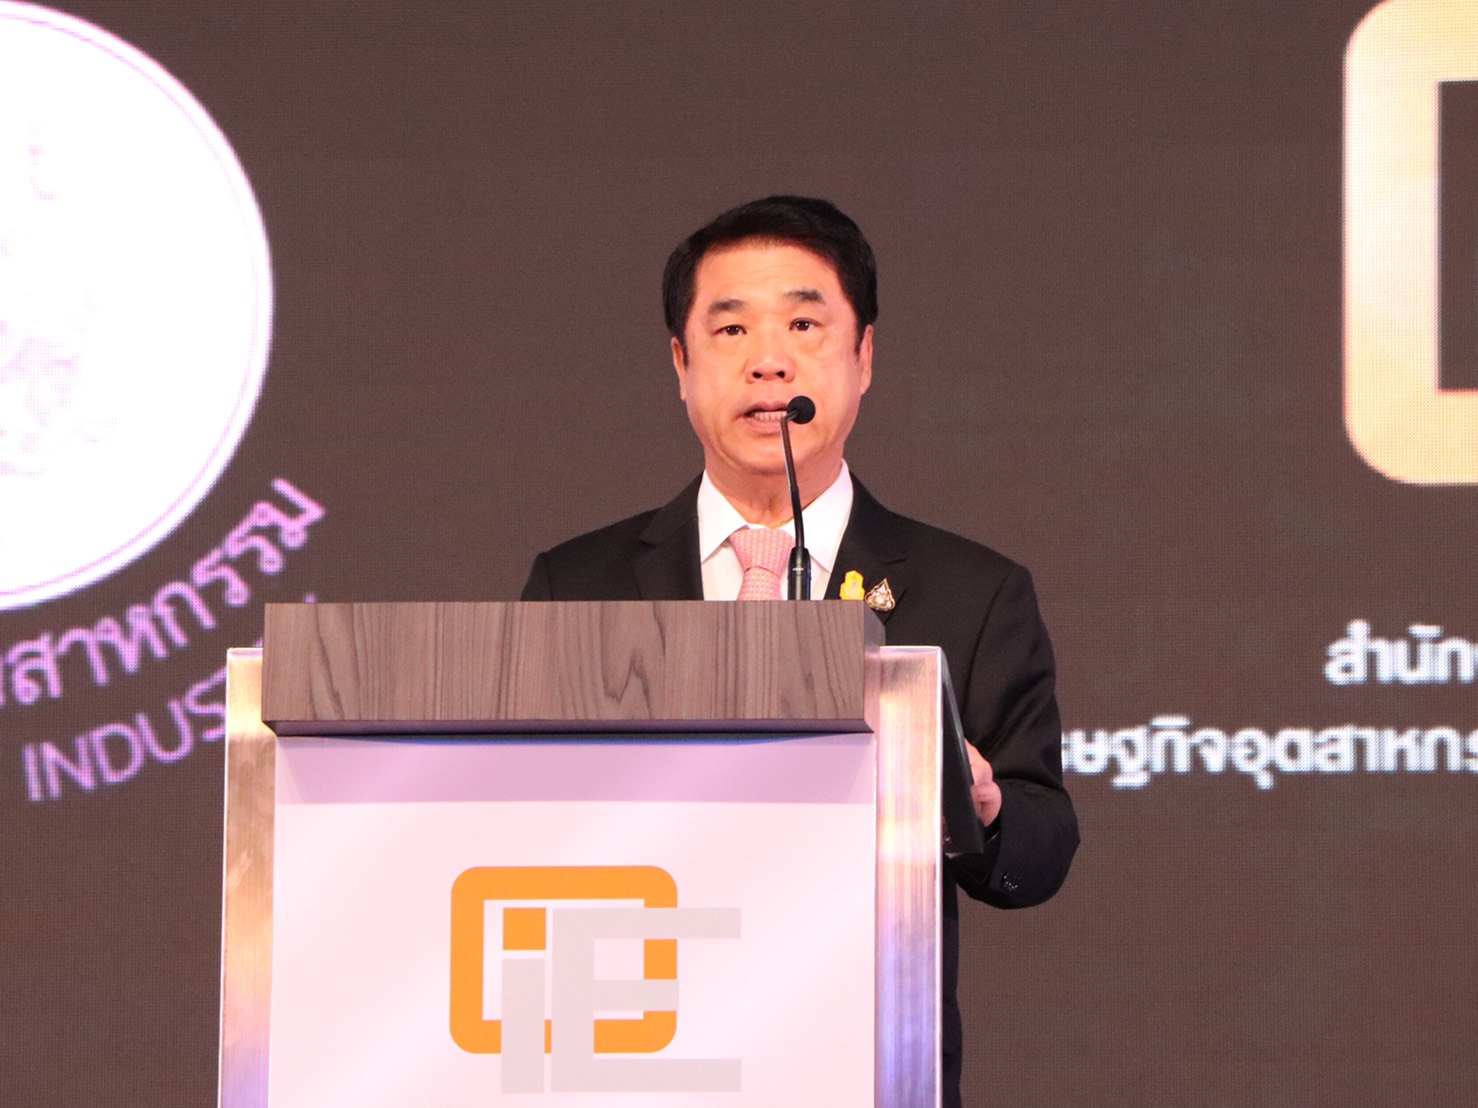 งานประจำปี สศอ. (OIE Forum) ประจำปี 2563 ภายใต้ชื่อ OIE Forum 2020 New Perspective of Thailand Industry “มองมุมกลับ ปรับมุมคิด พลิกวิกฤตอุตสาหกรรมไทย” 